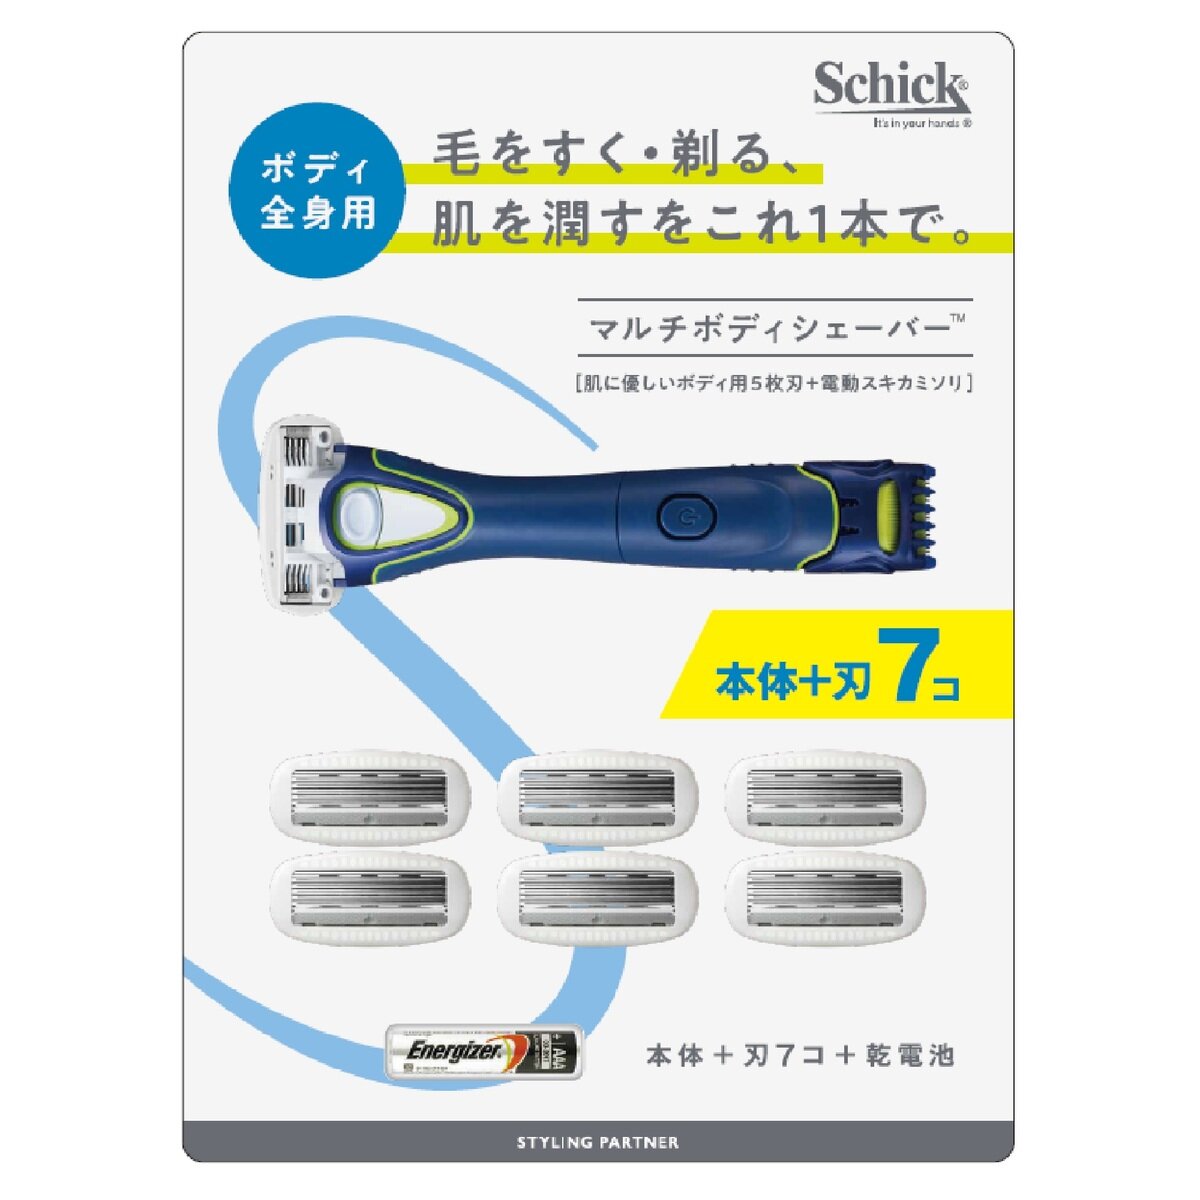 Schick(シック) マルチボディシェーバー 本体 替刃7個 Costco Japan